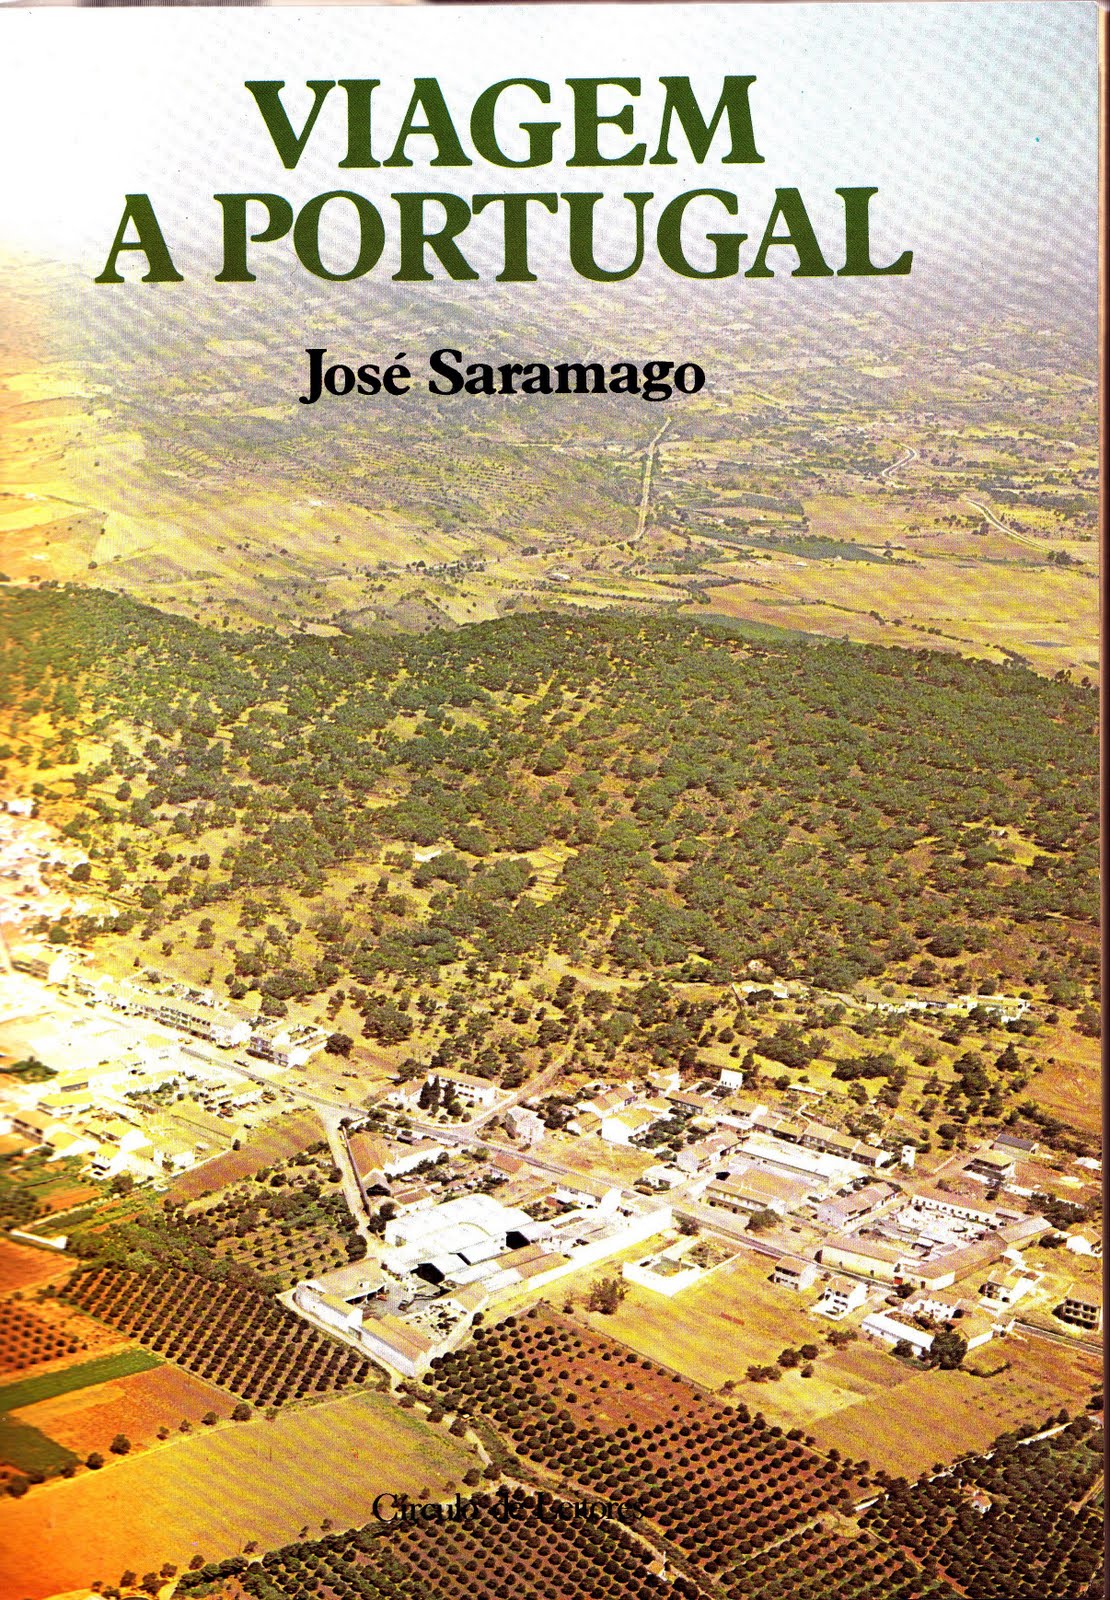 Viagem a Portugal José Saramago (1981)